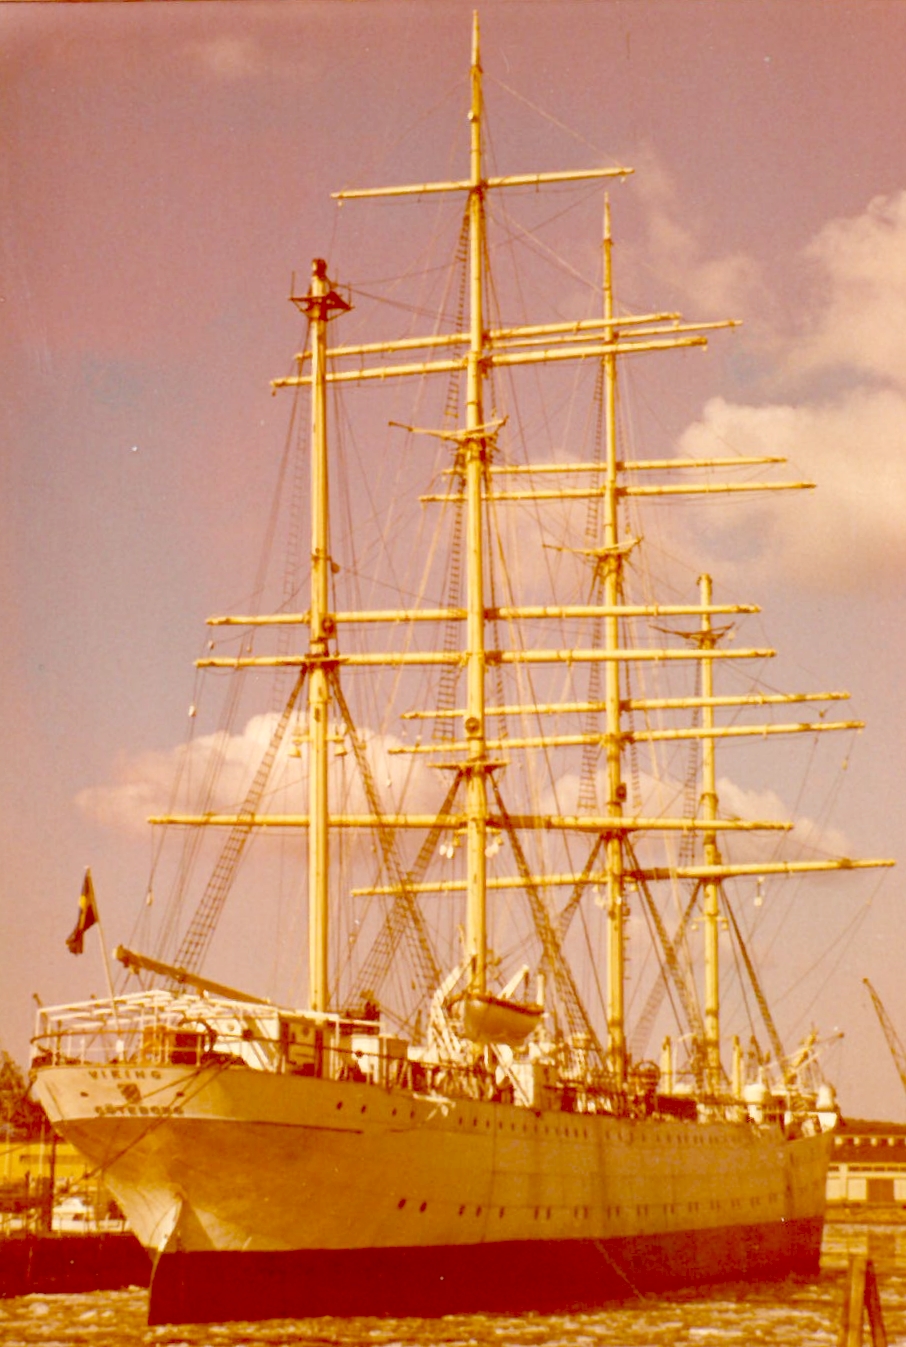 Large sailship